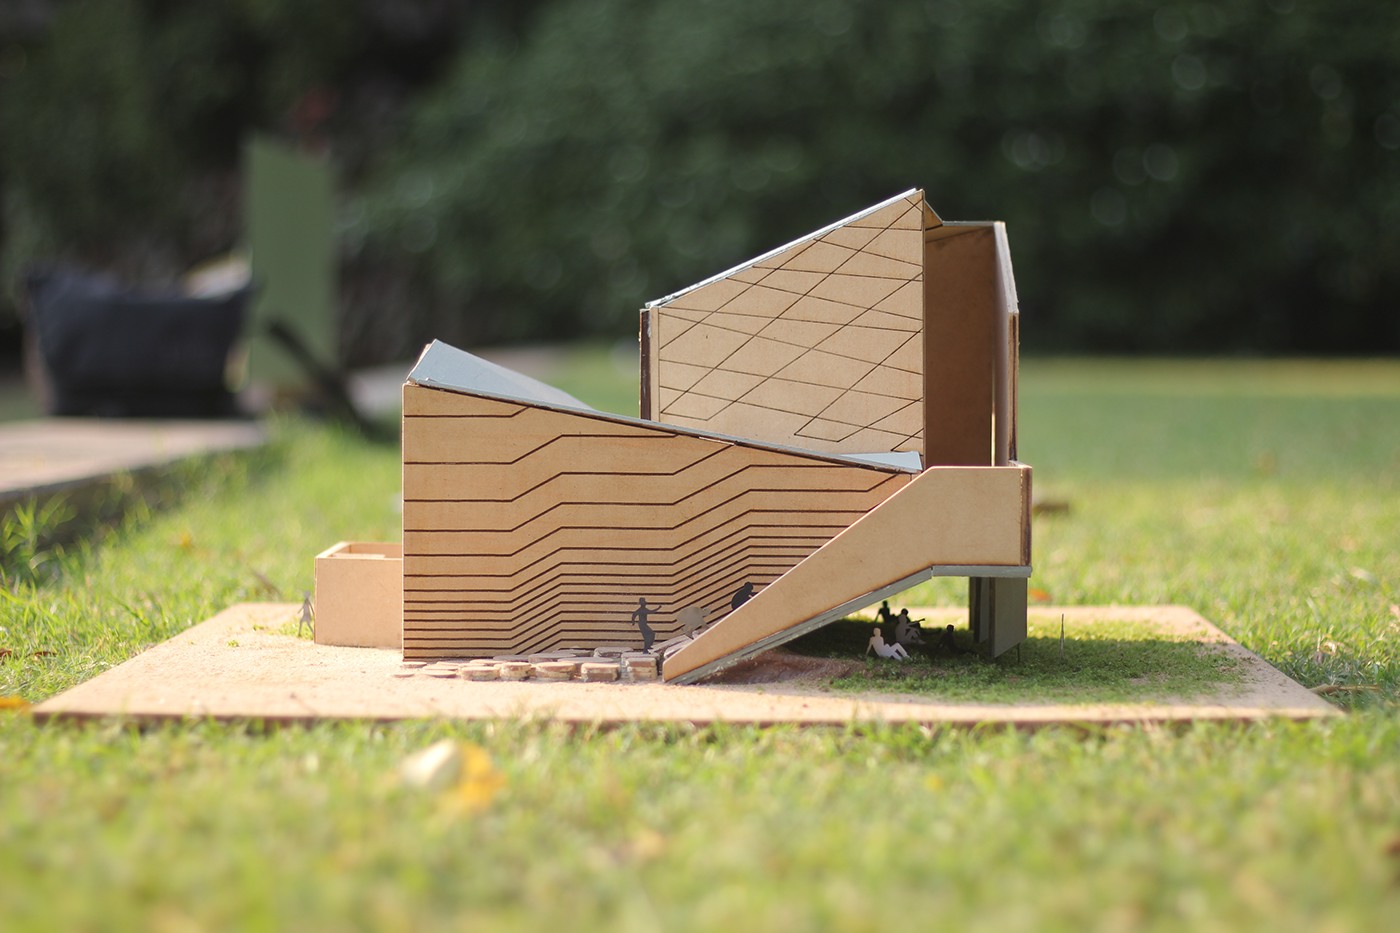 3D model Exhibition Design  parkour narrative set design  miniature set pavilion experience design Spatial Design